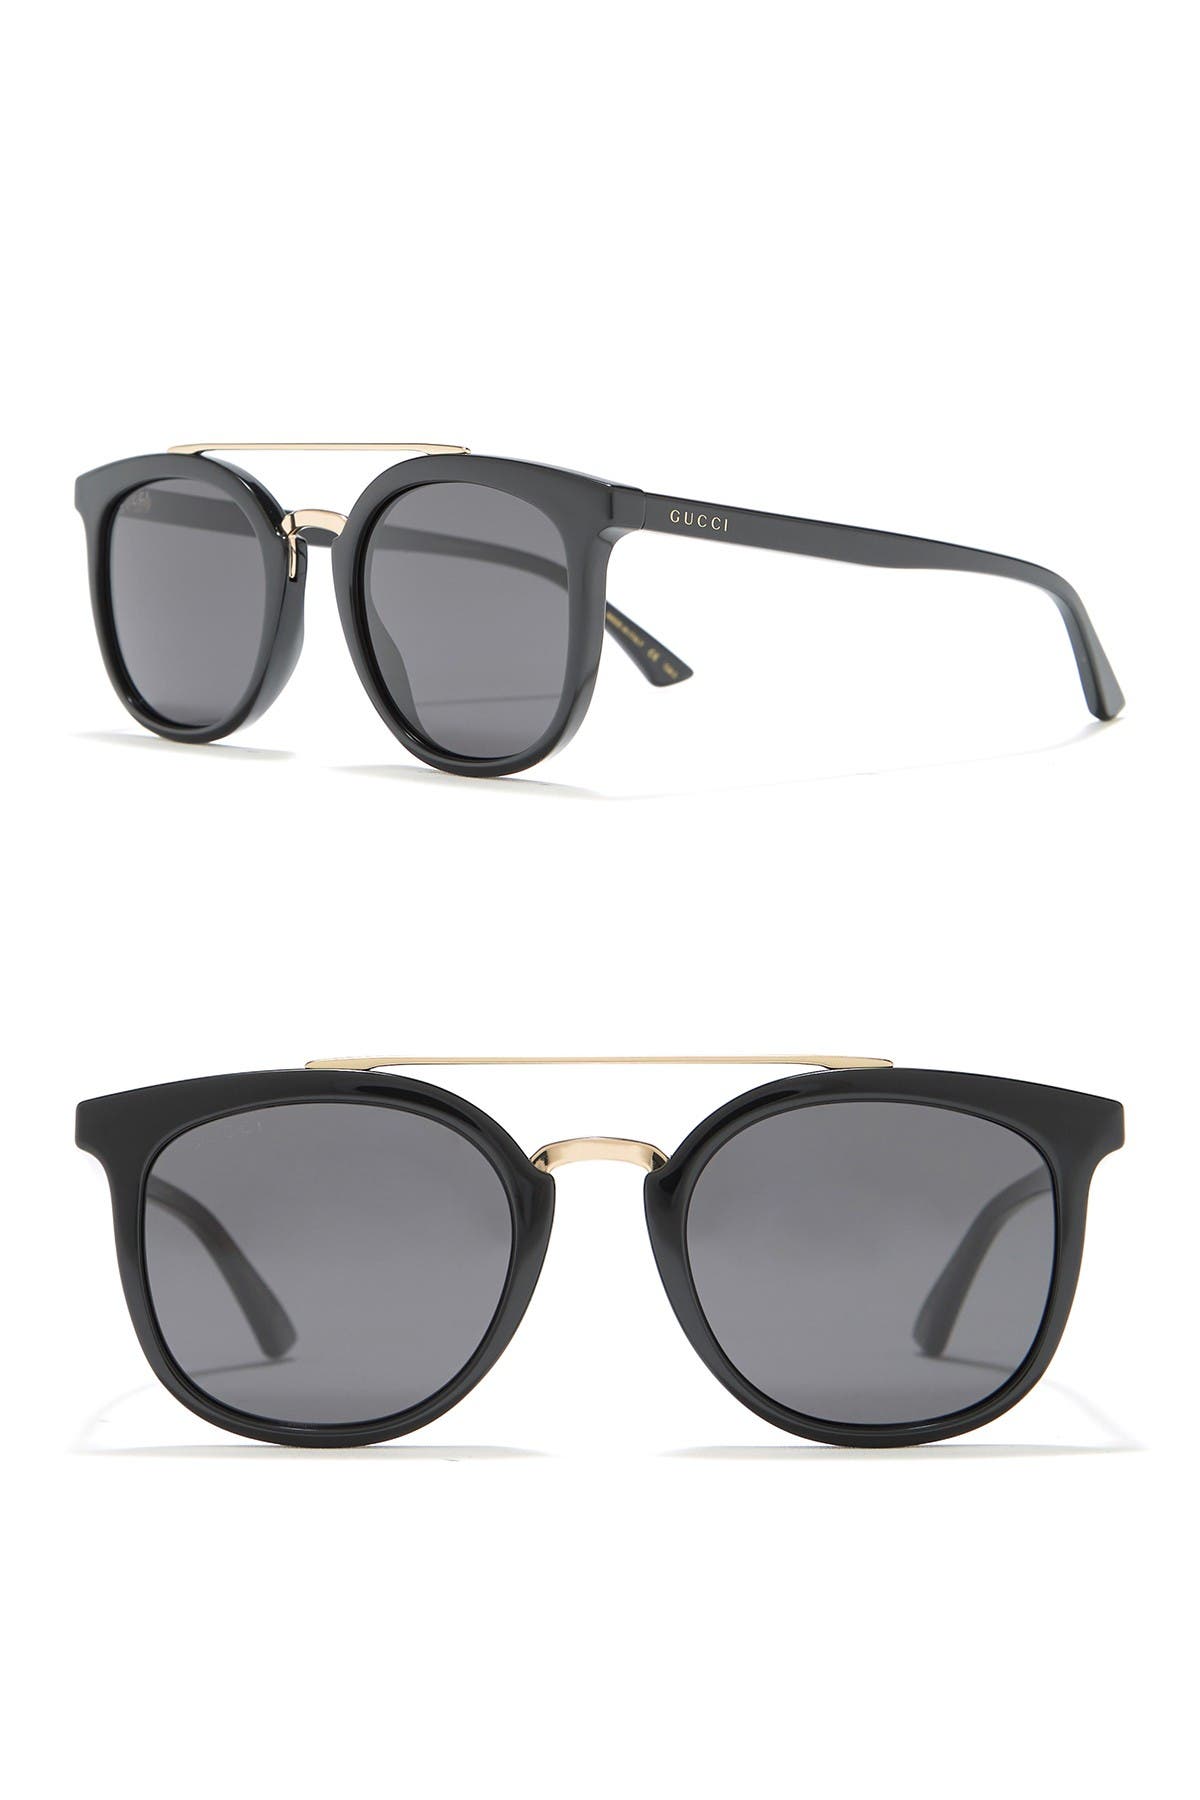 GUCCI | 51mm Square Sunglasses 